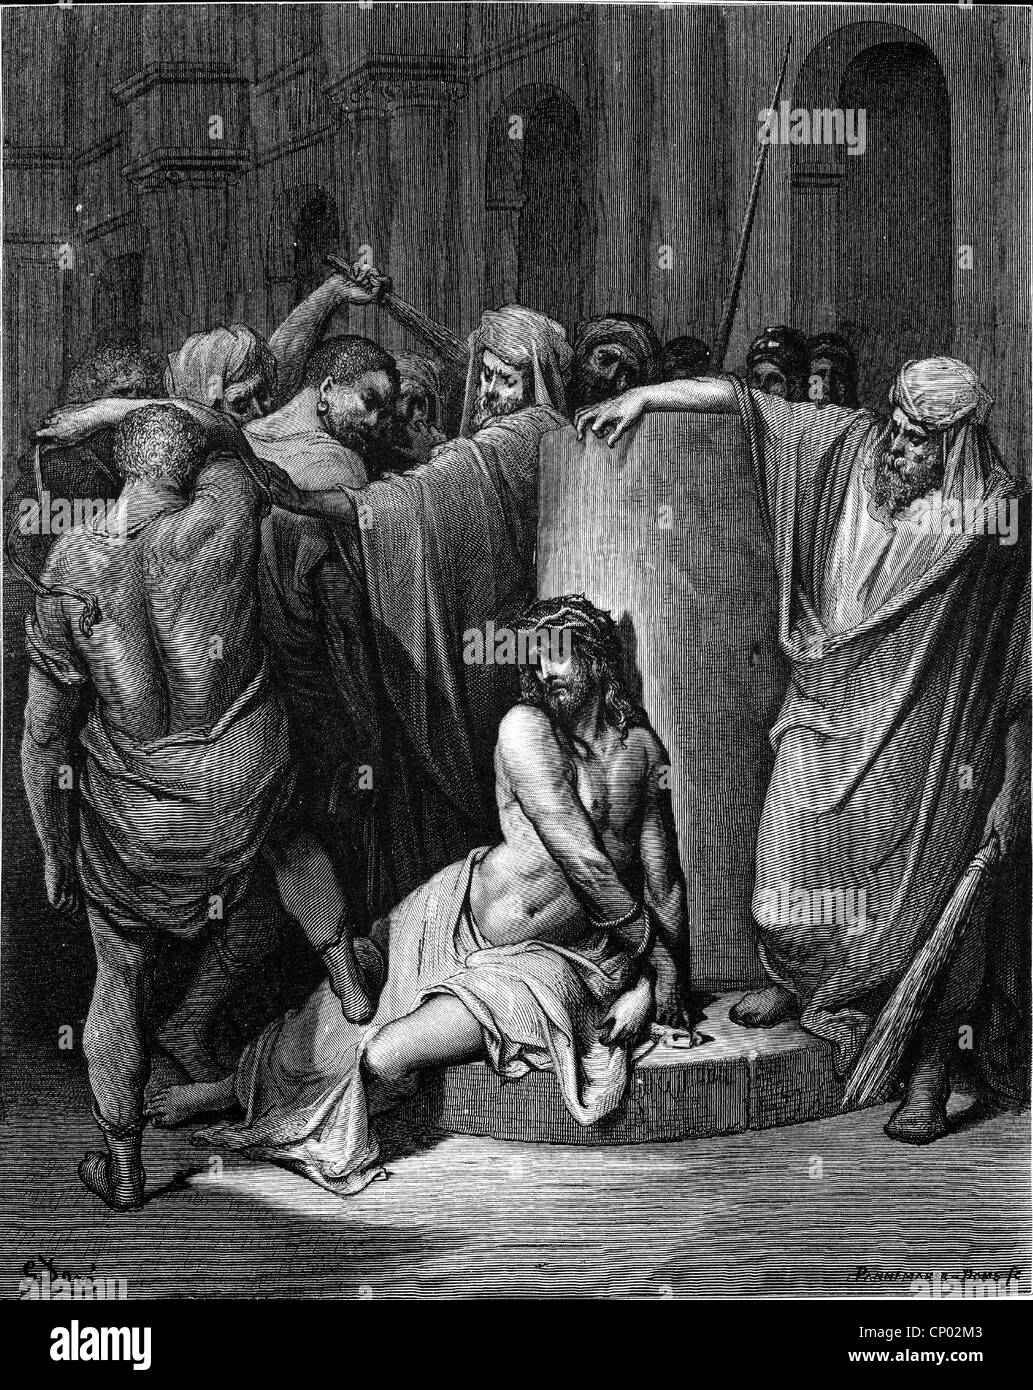 La religione, il cristianesimo, Gesù Cristo: "La Flagellazione di Cristo", incisione su legno da Gustave Dore, circa 1866, artista del diritto d'autore non deve essere cancellata Foto Stock